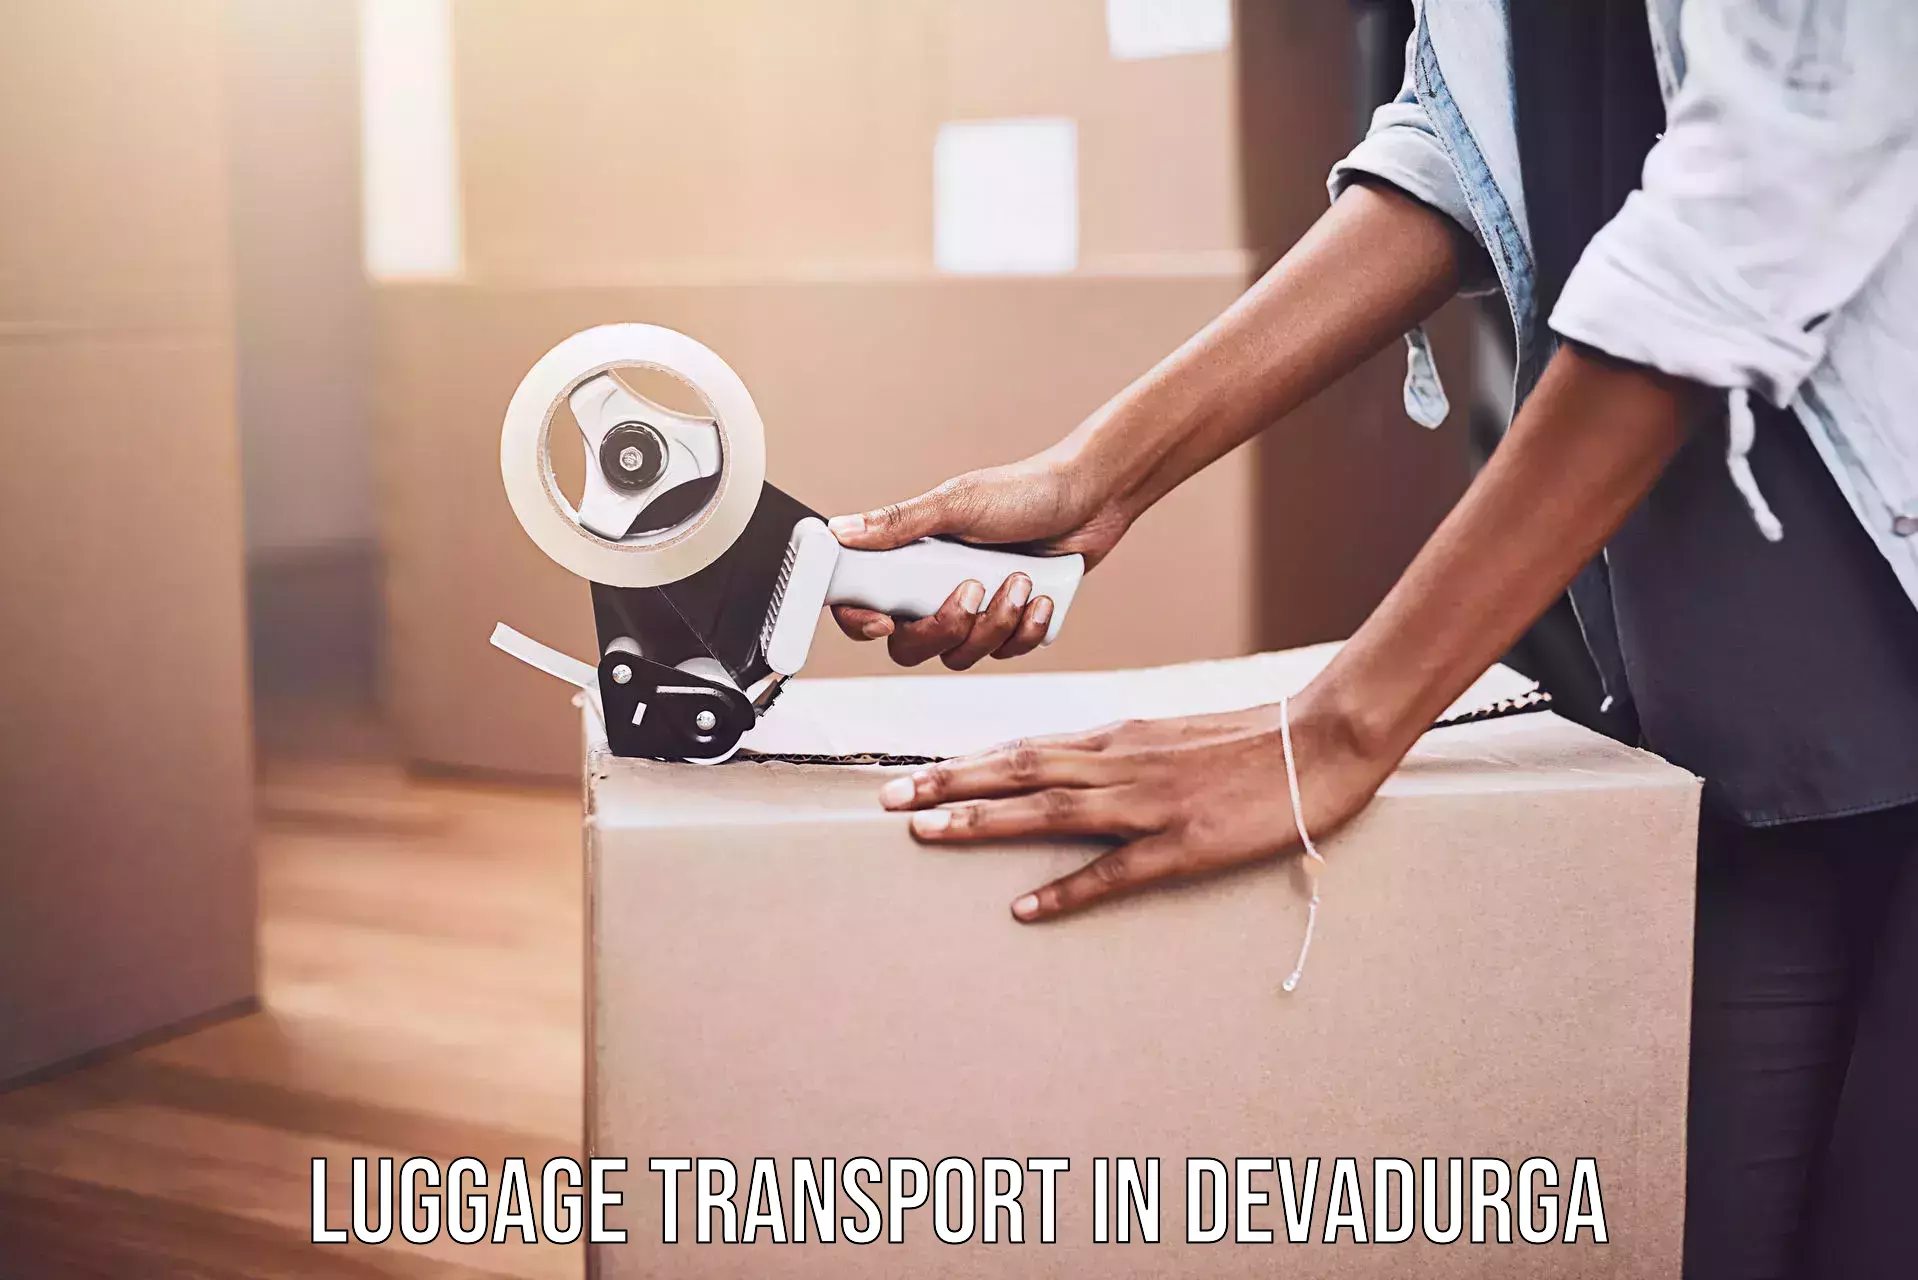 Baggage transport quote in Devadurga